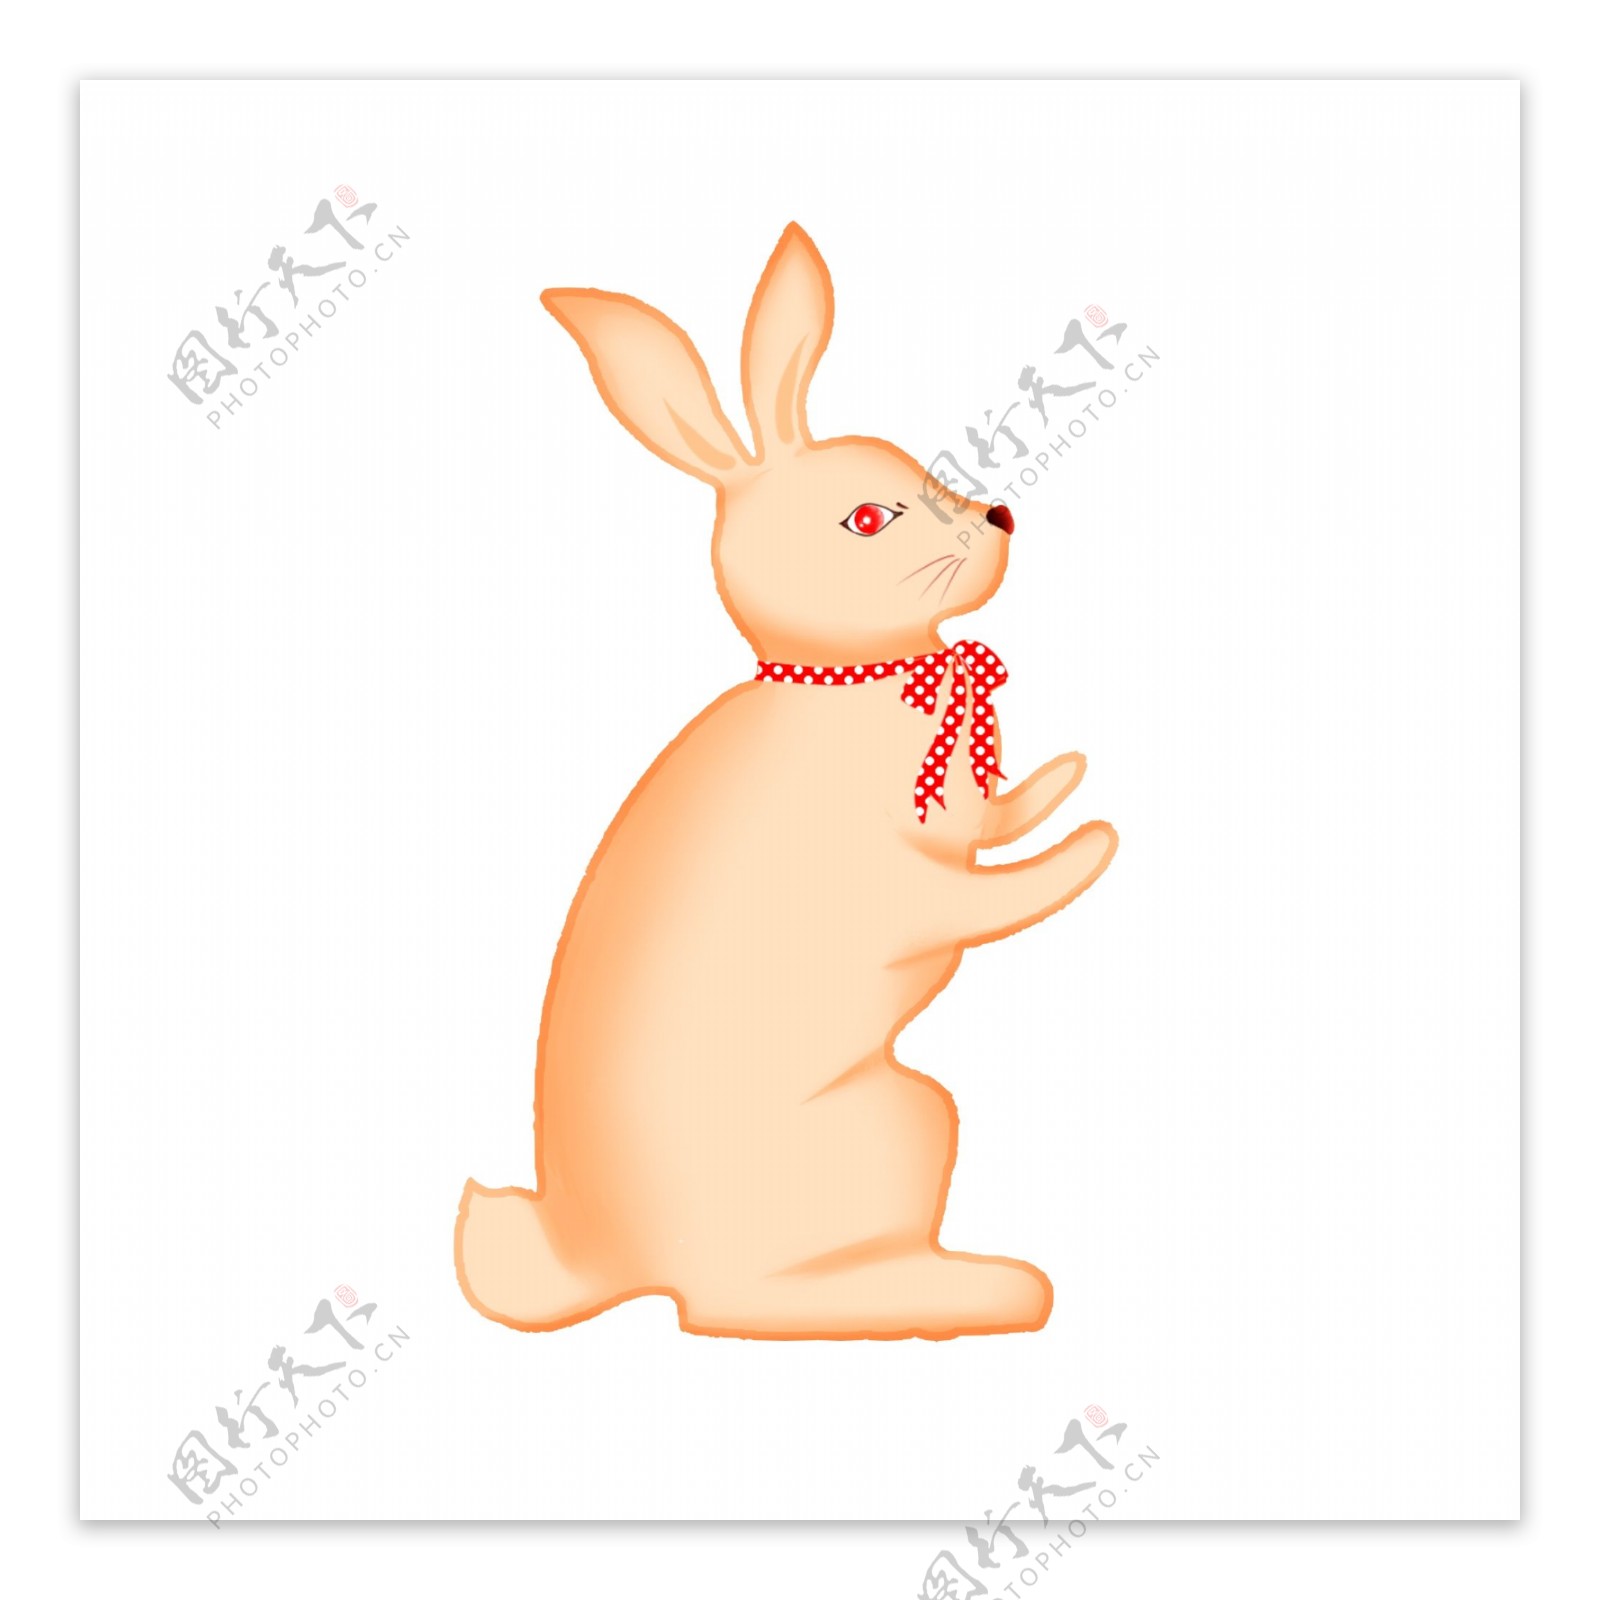 复活节卡通兔子蝴蝶结可爱